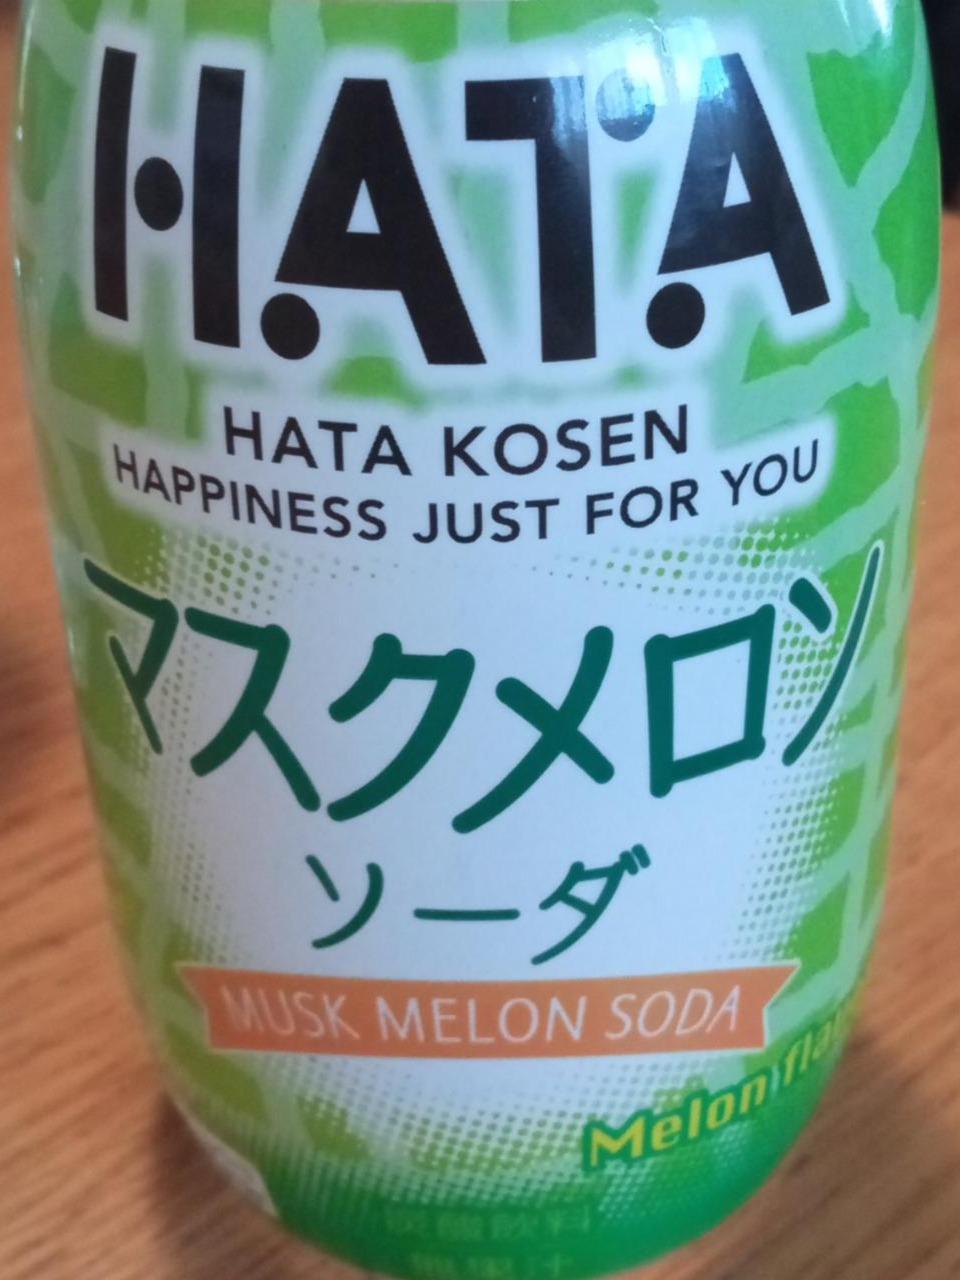 Fotografie - Hata Kosen Musk Melon Soda Hata